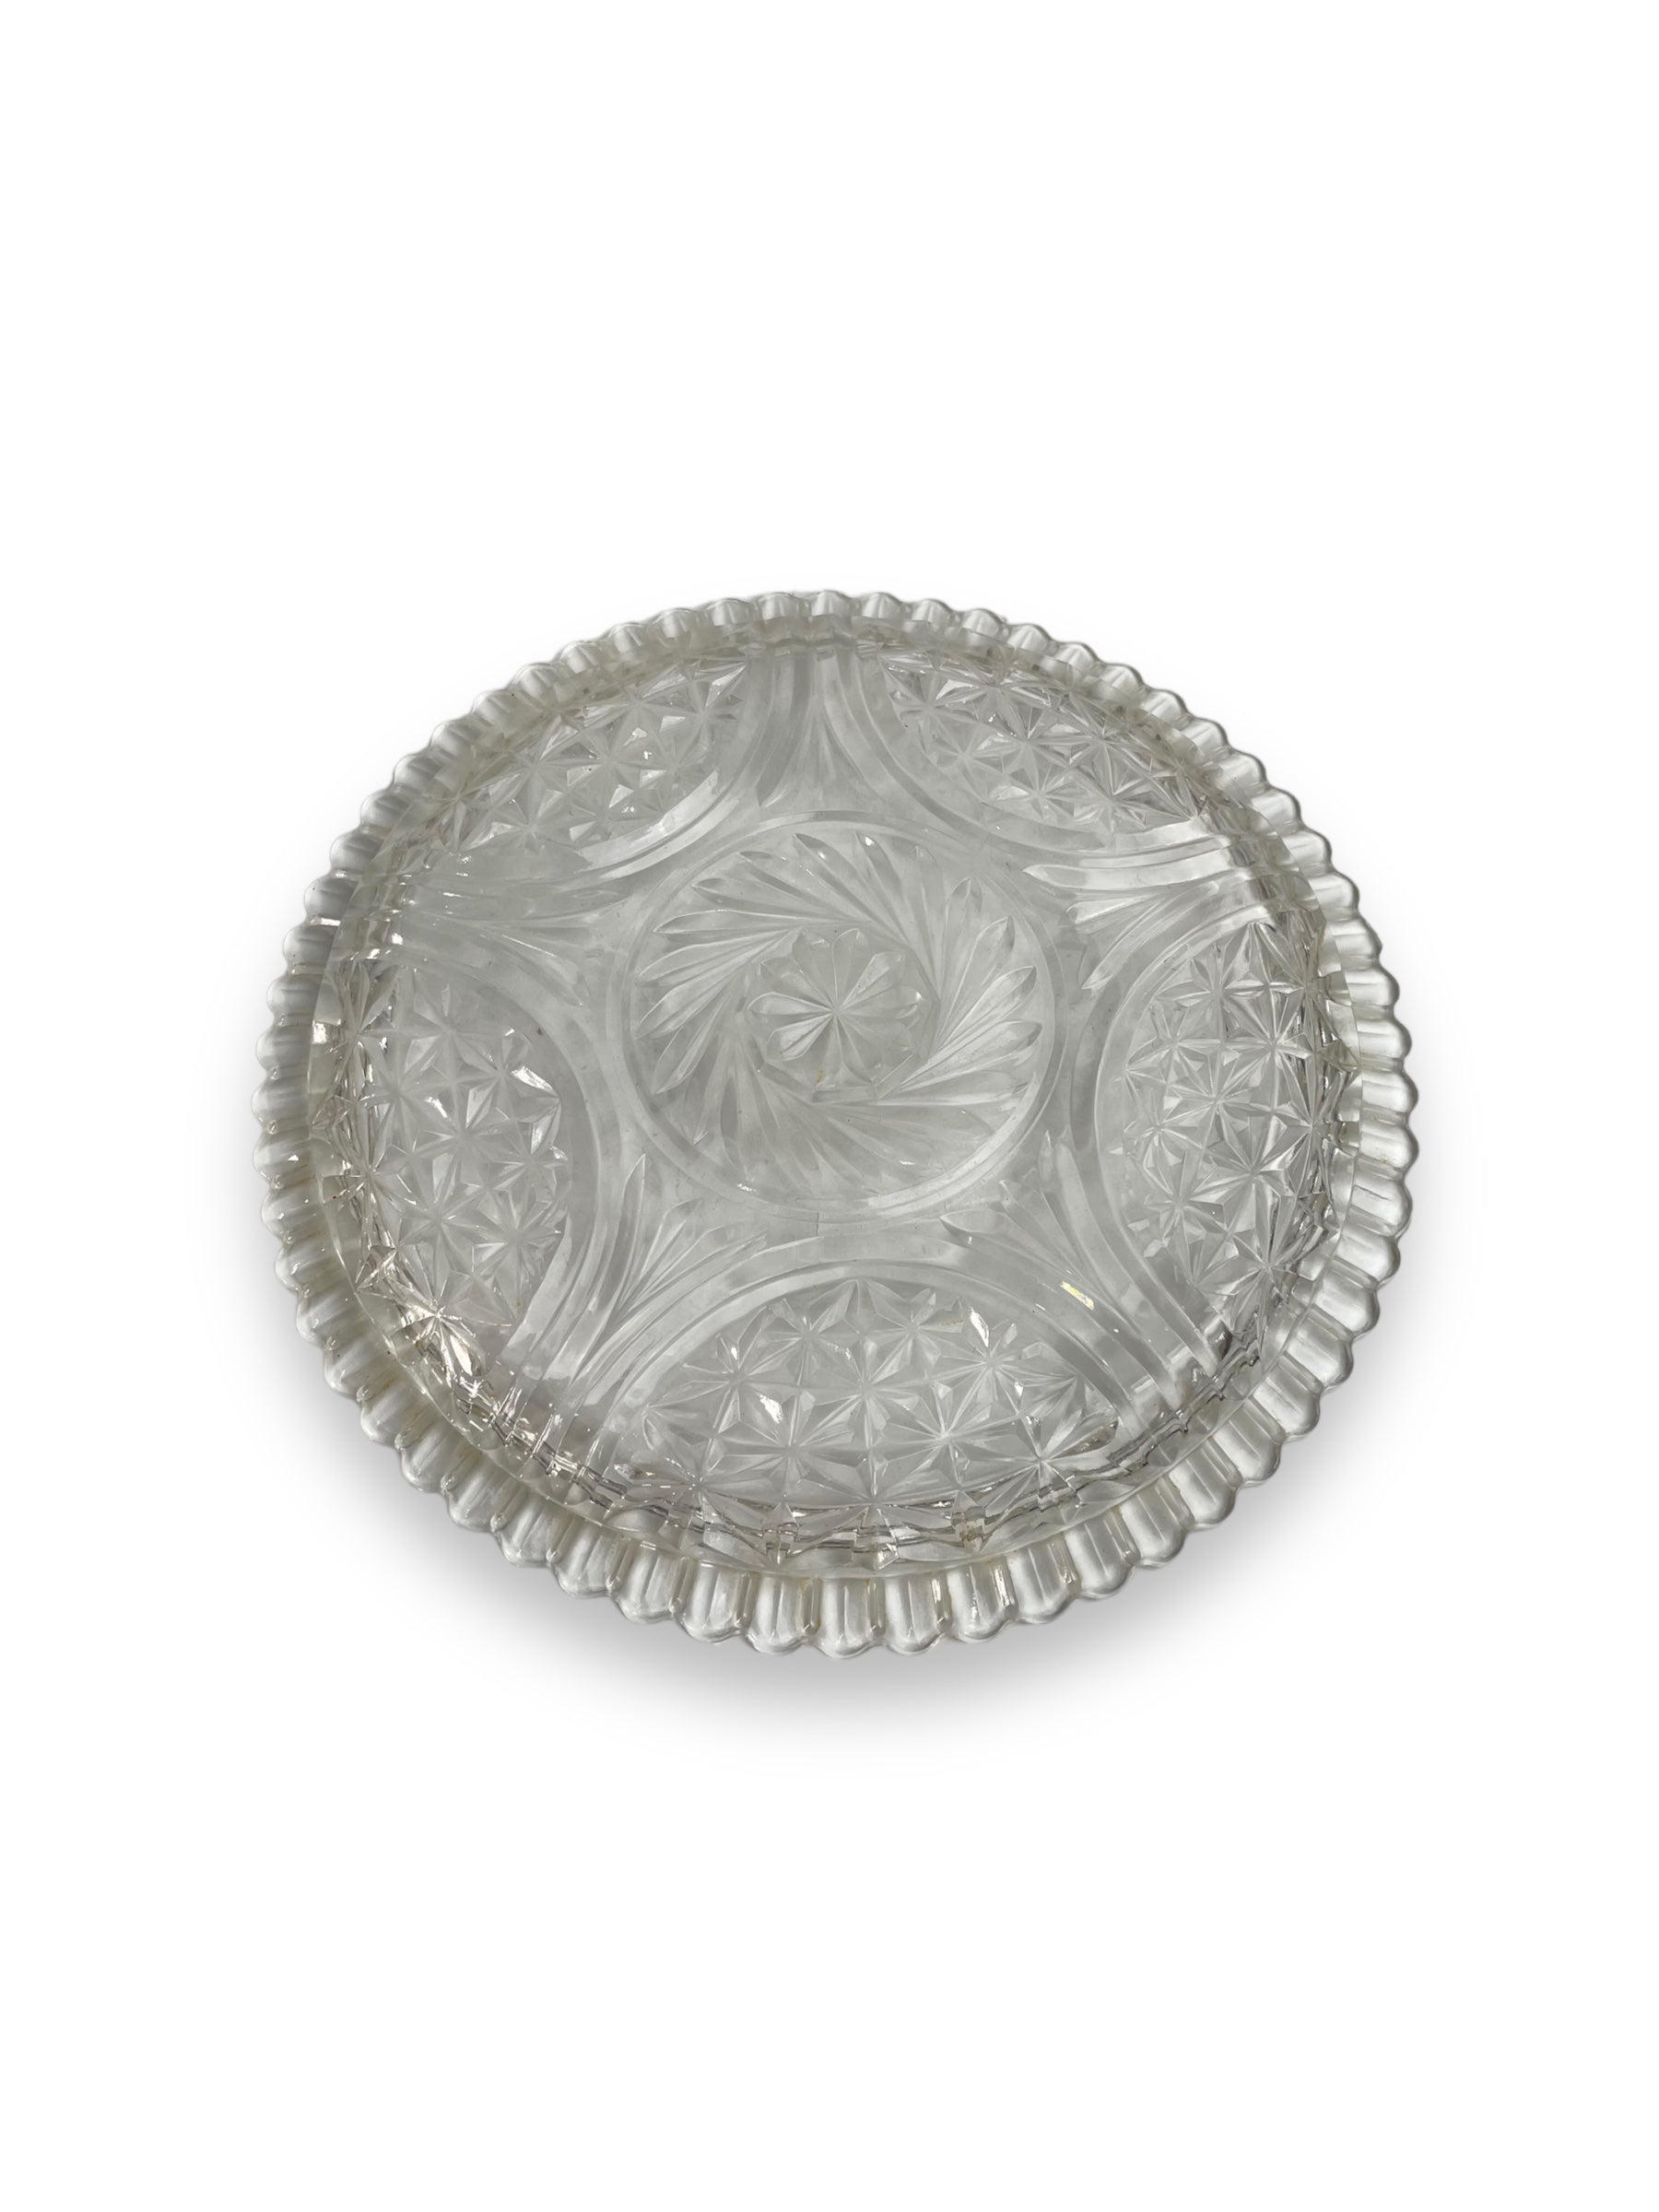 Scalloped Edge Glass 12-inch Platter